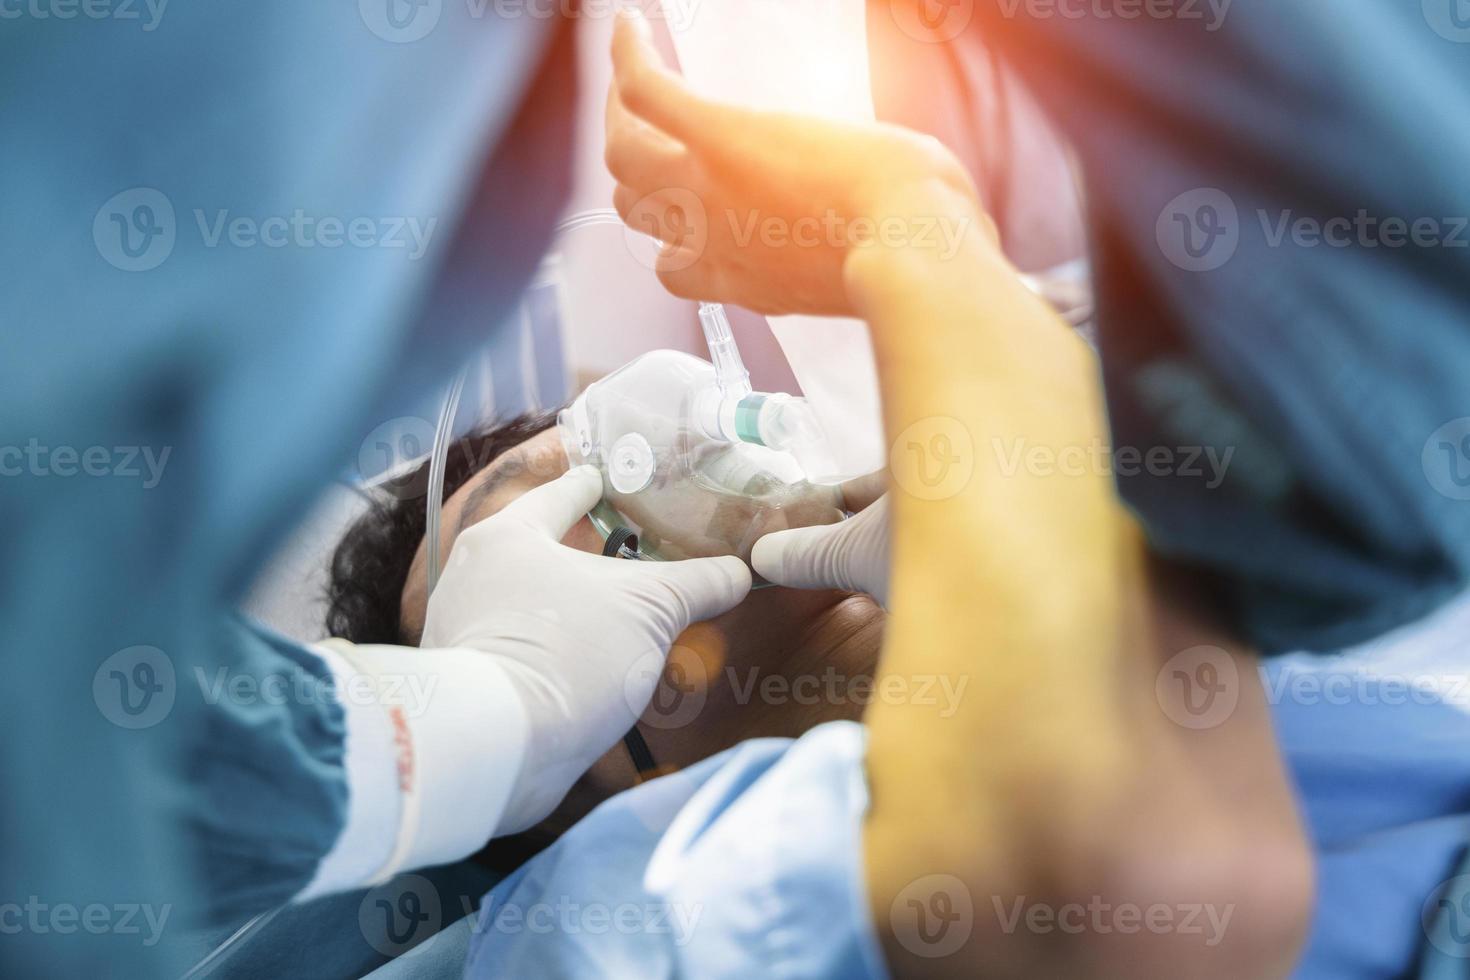 o cirurgião assistente colocou o paciente em uma máscara de ventilador de oxigênio em preparação para a cirurgia. foto